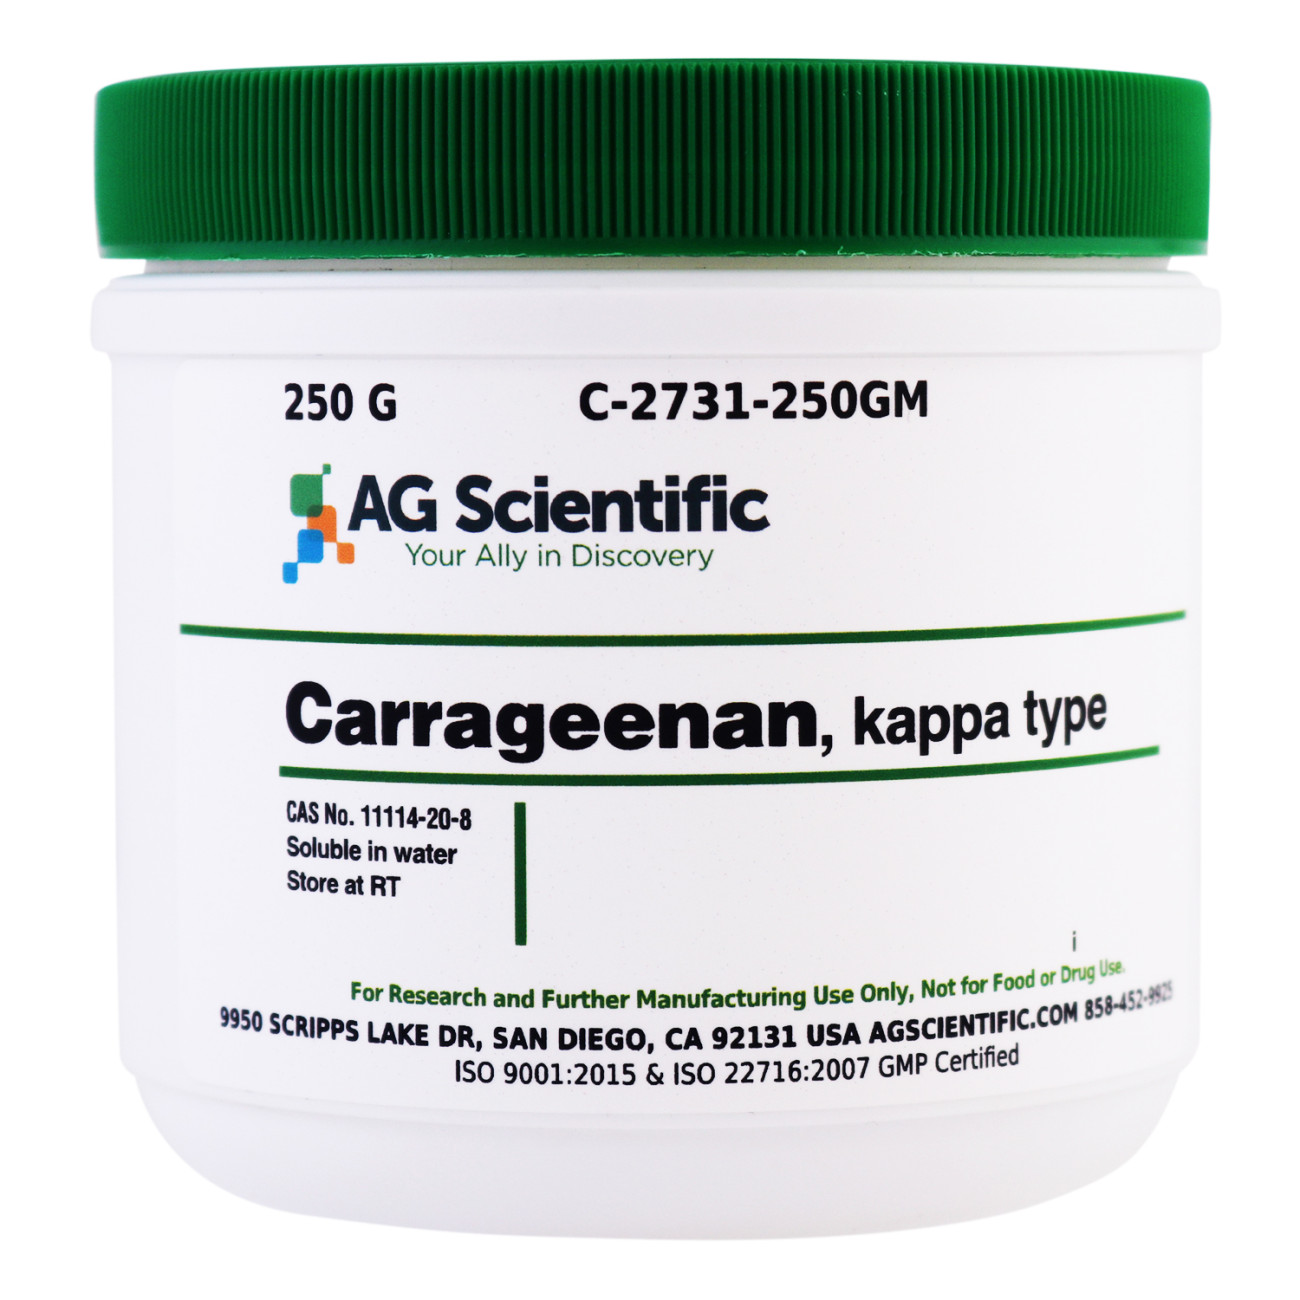 C-2731-250GM - Carrageenan, Kappa Type, 250 G